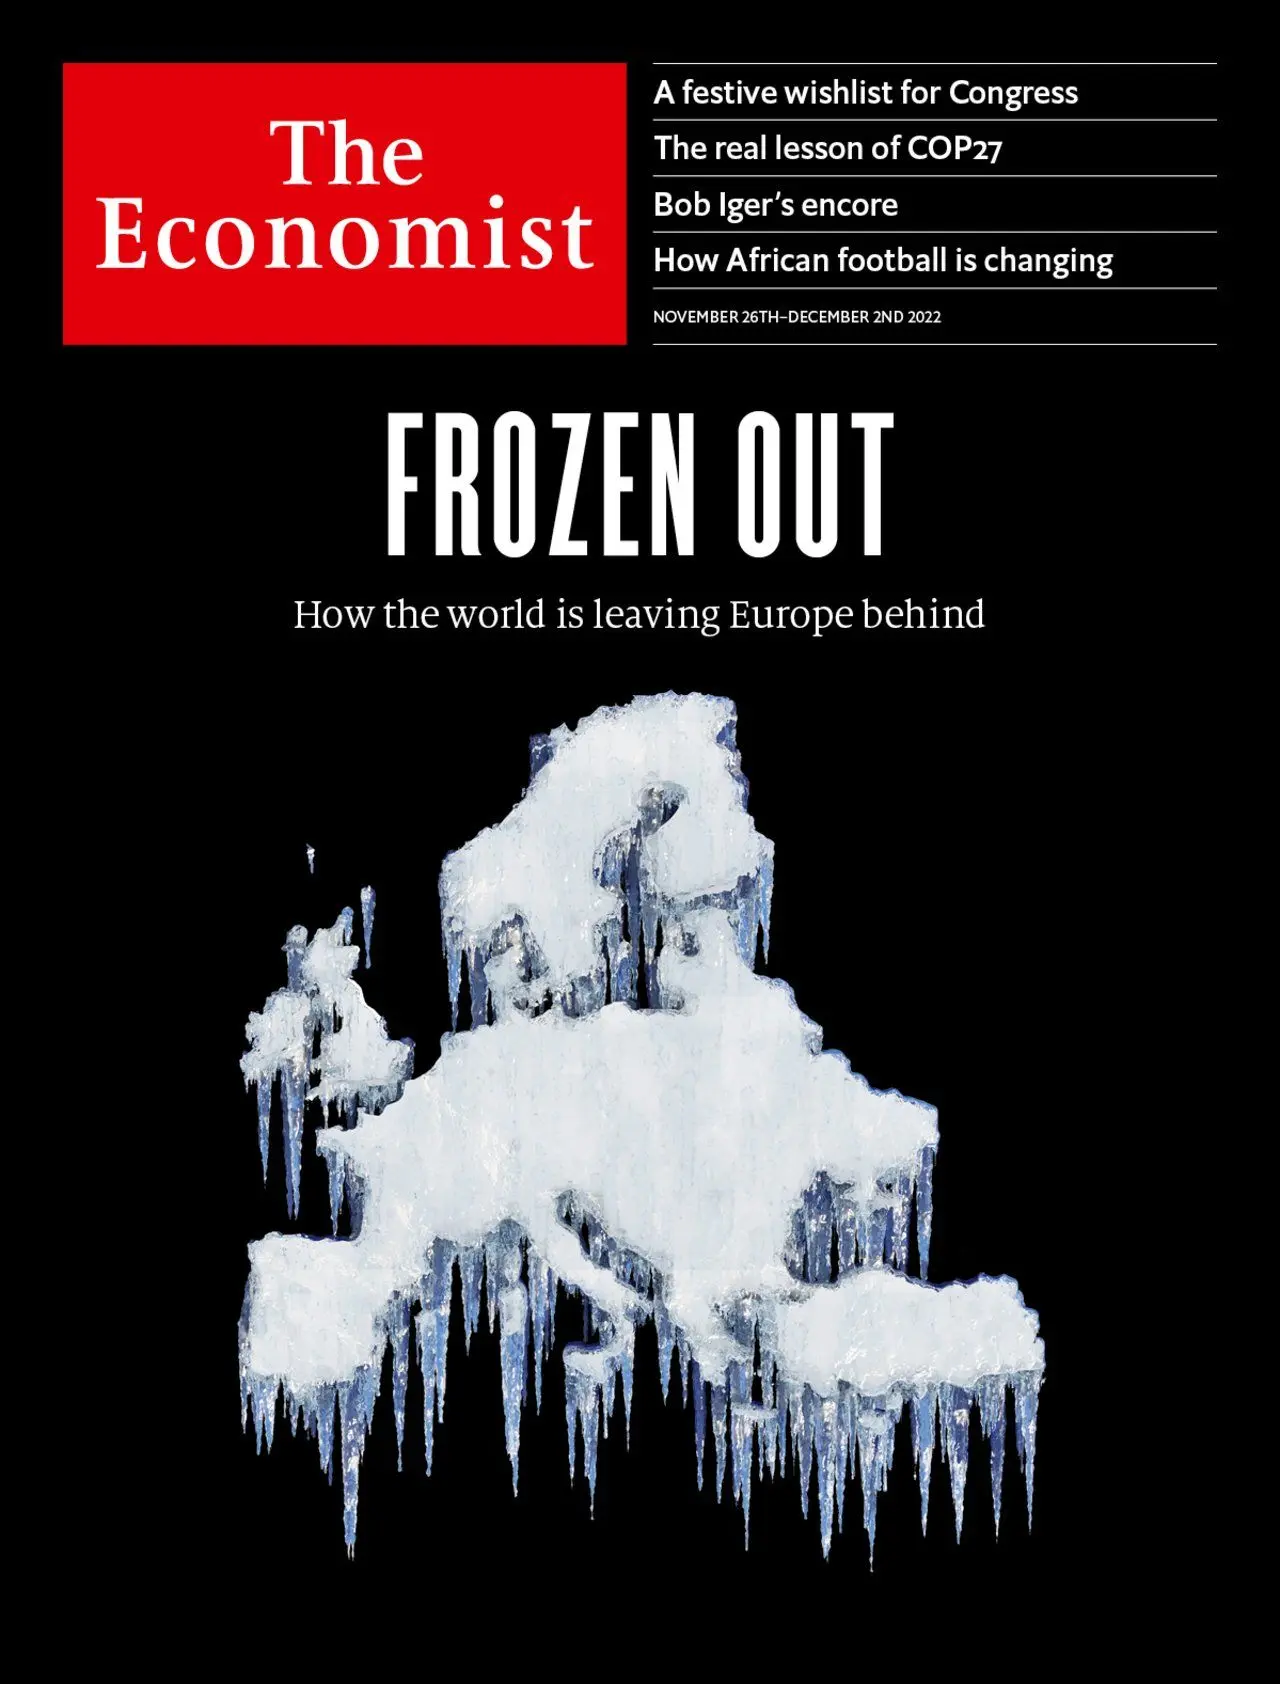 زمستان قبلی چند نفر بر اثر سرما در اروپا جان بختند؟